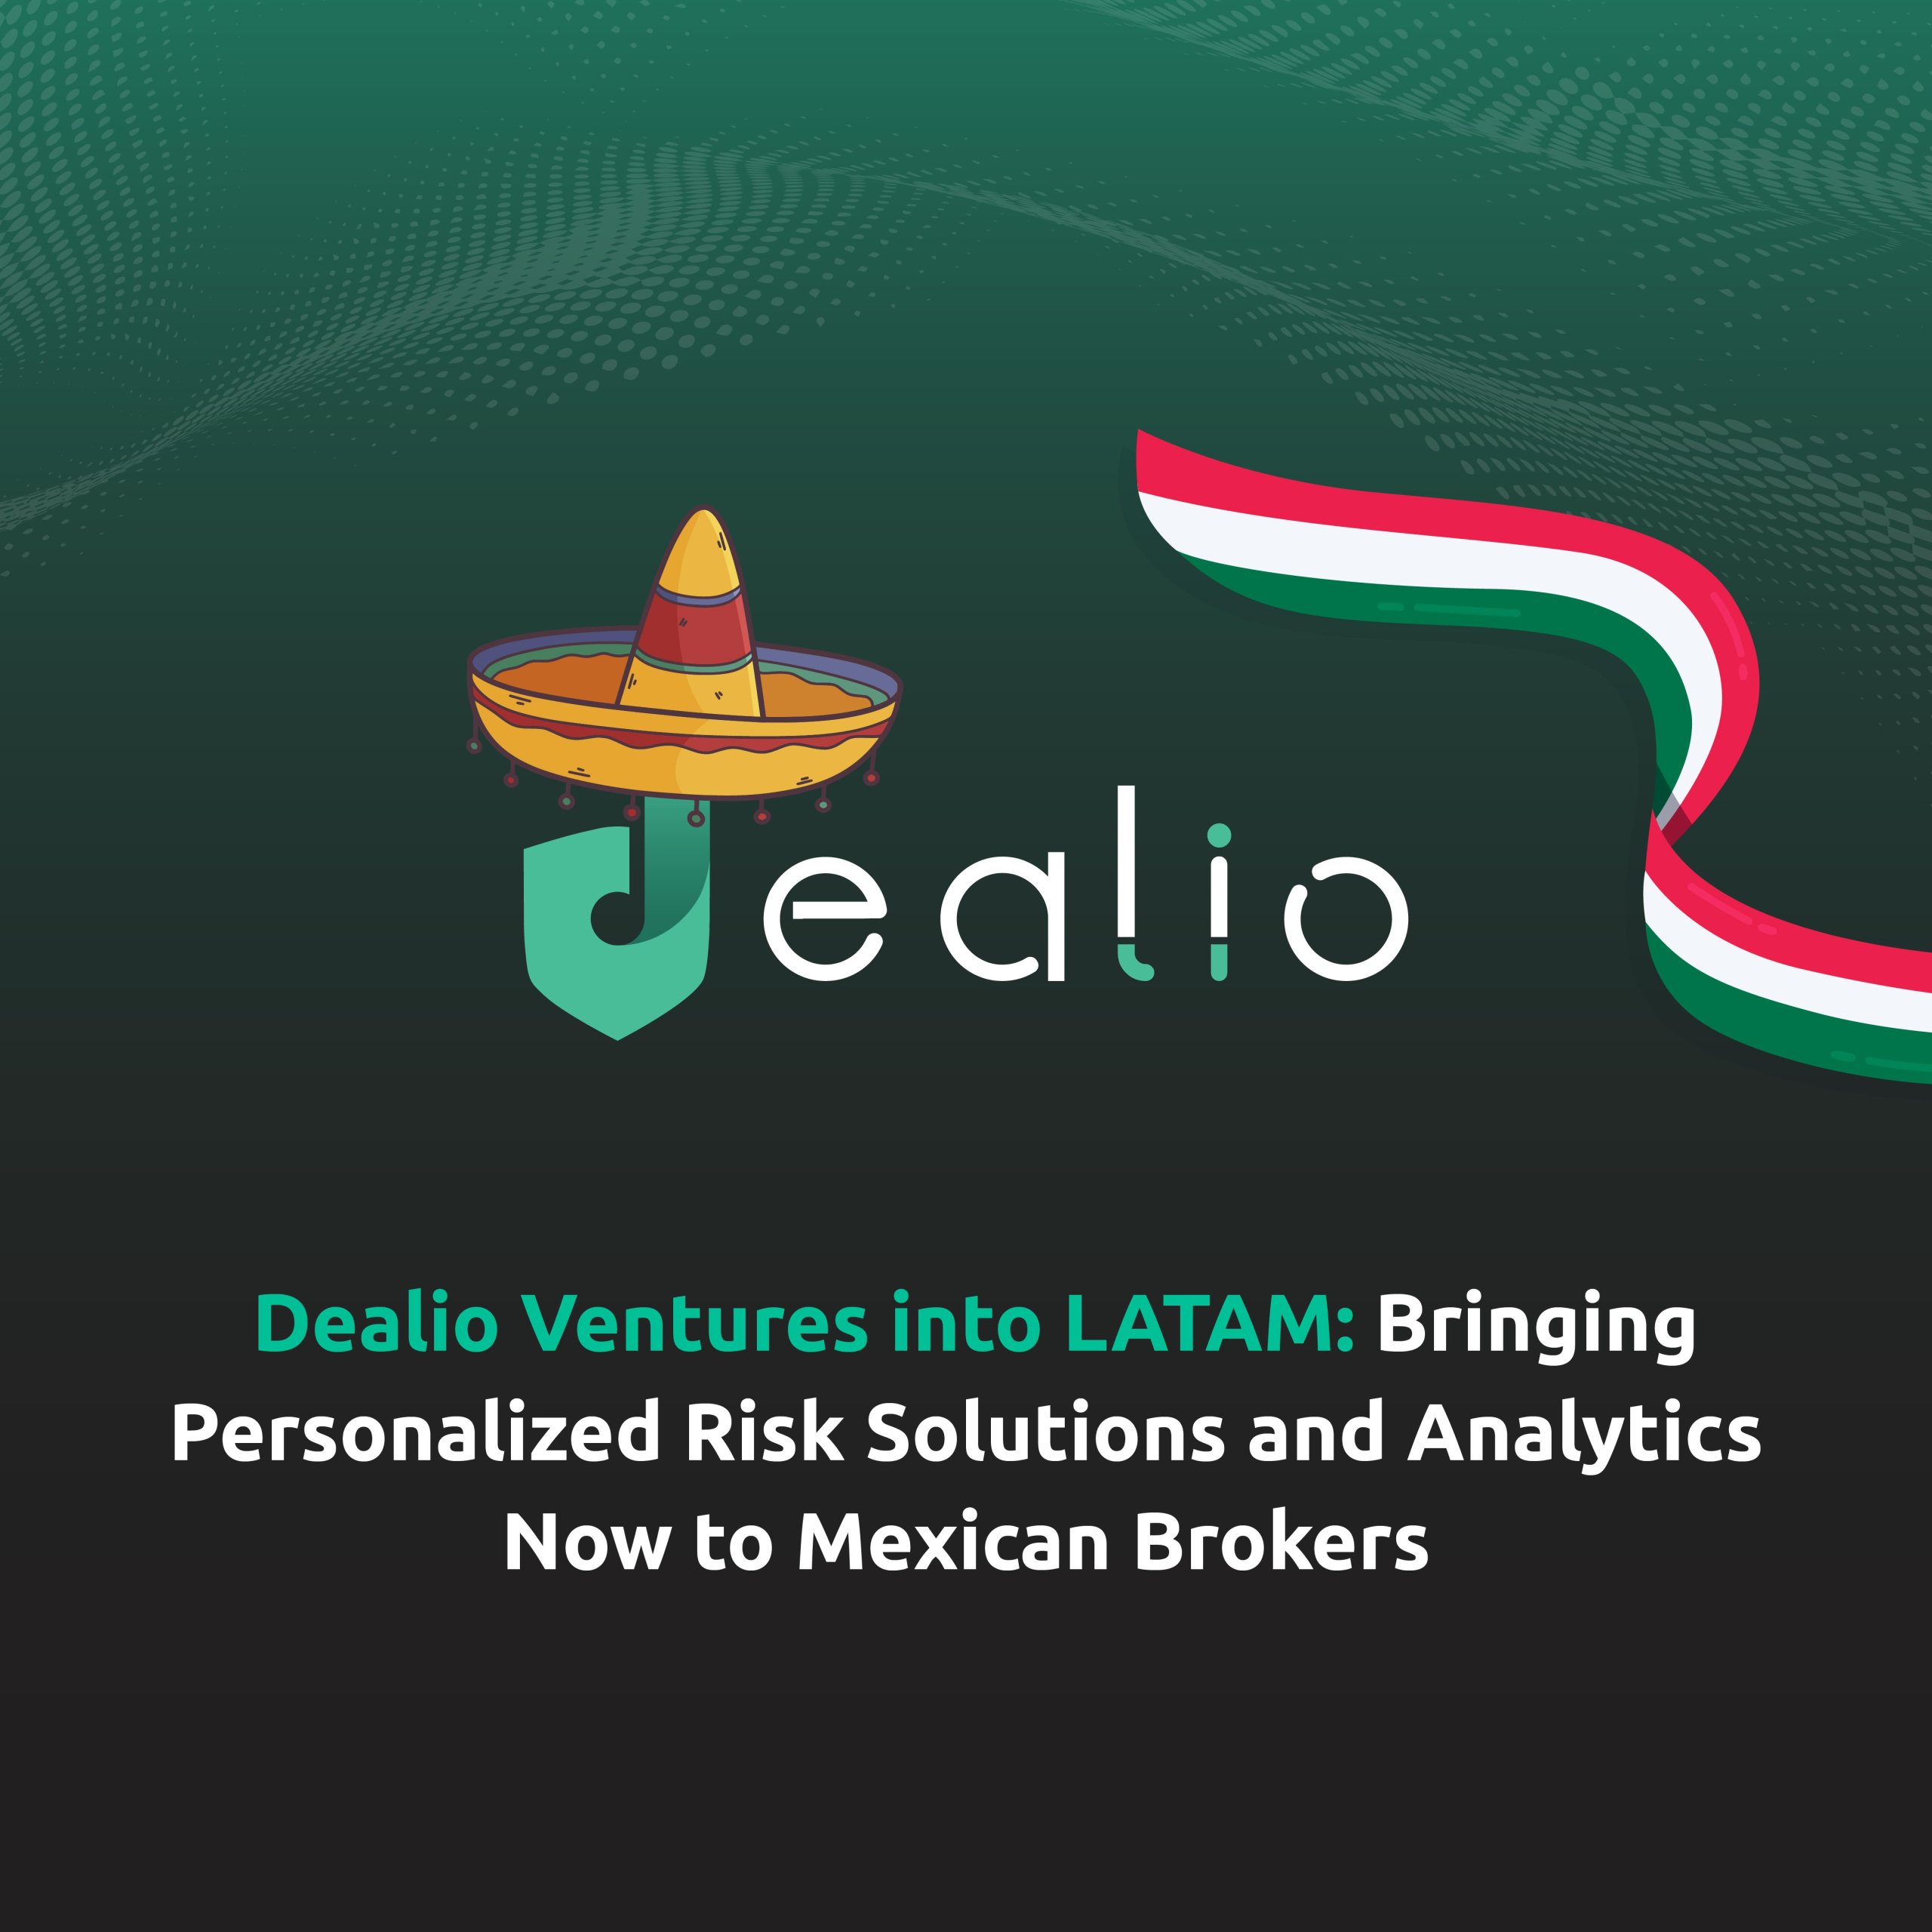 Dealio expands into LATAM FinTech market